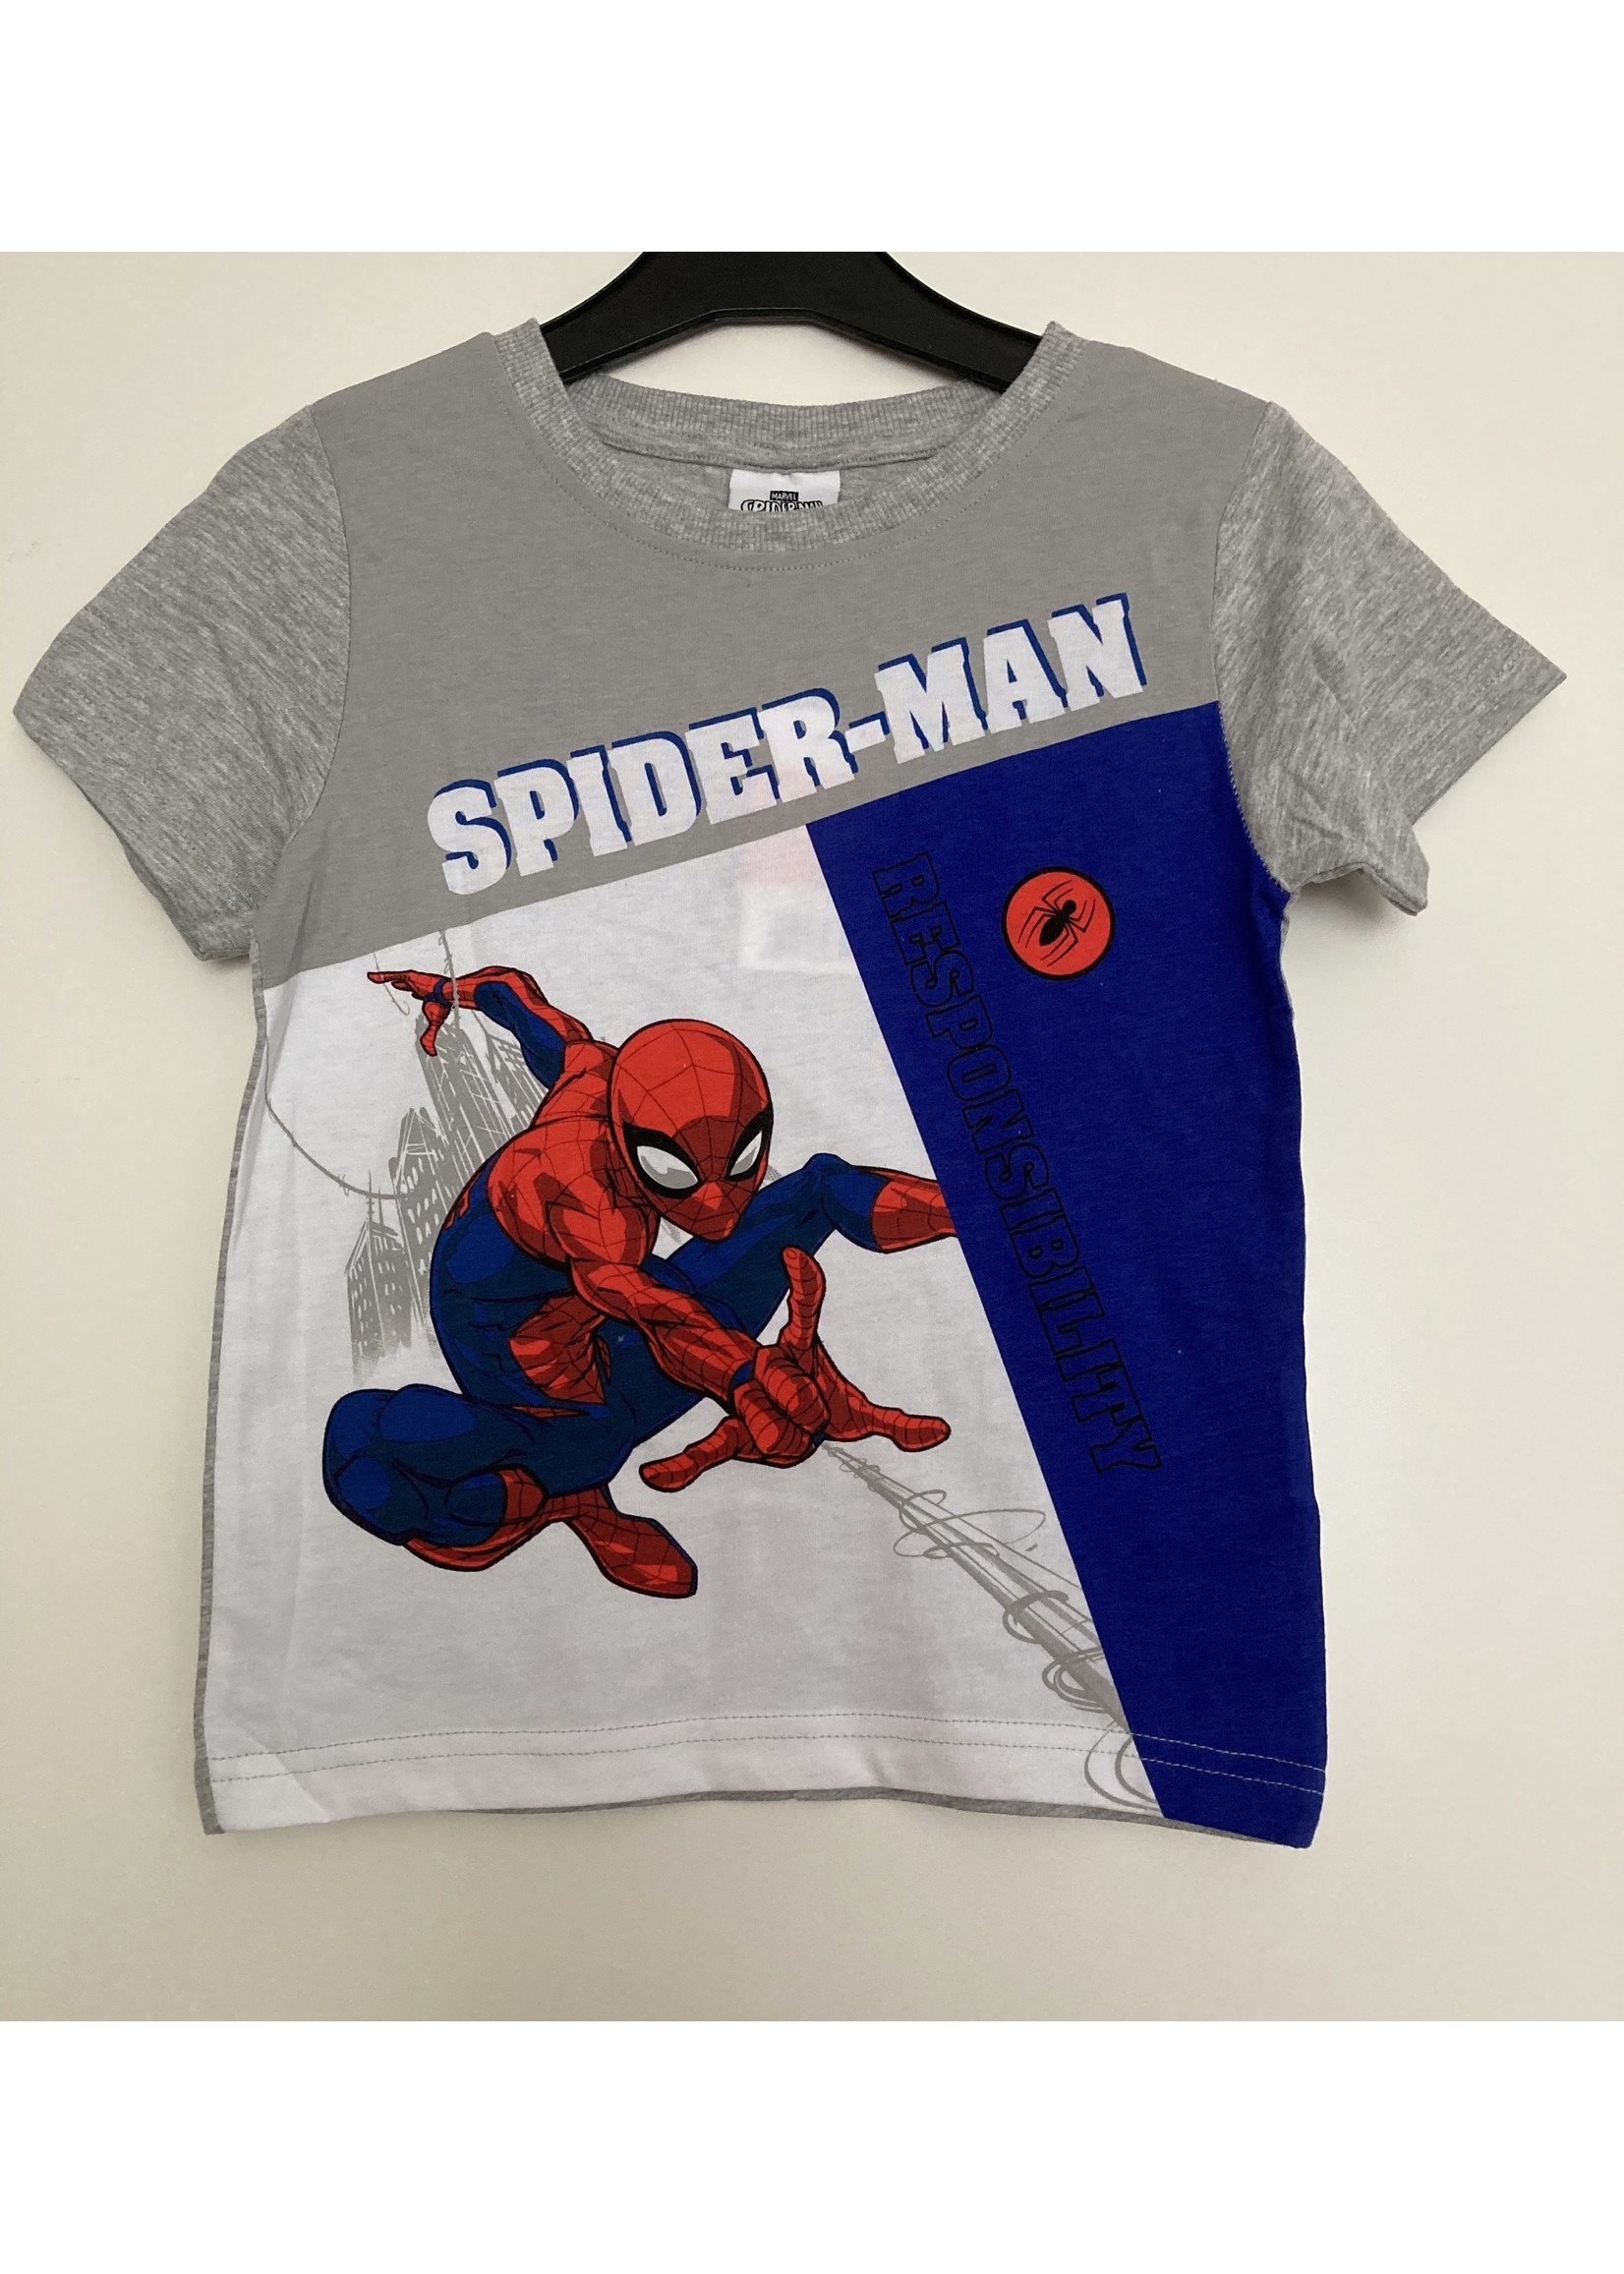 Marvel Spiderman T-shirt van Marvel grijs